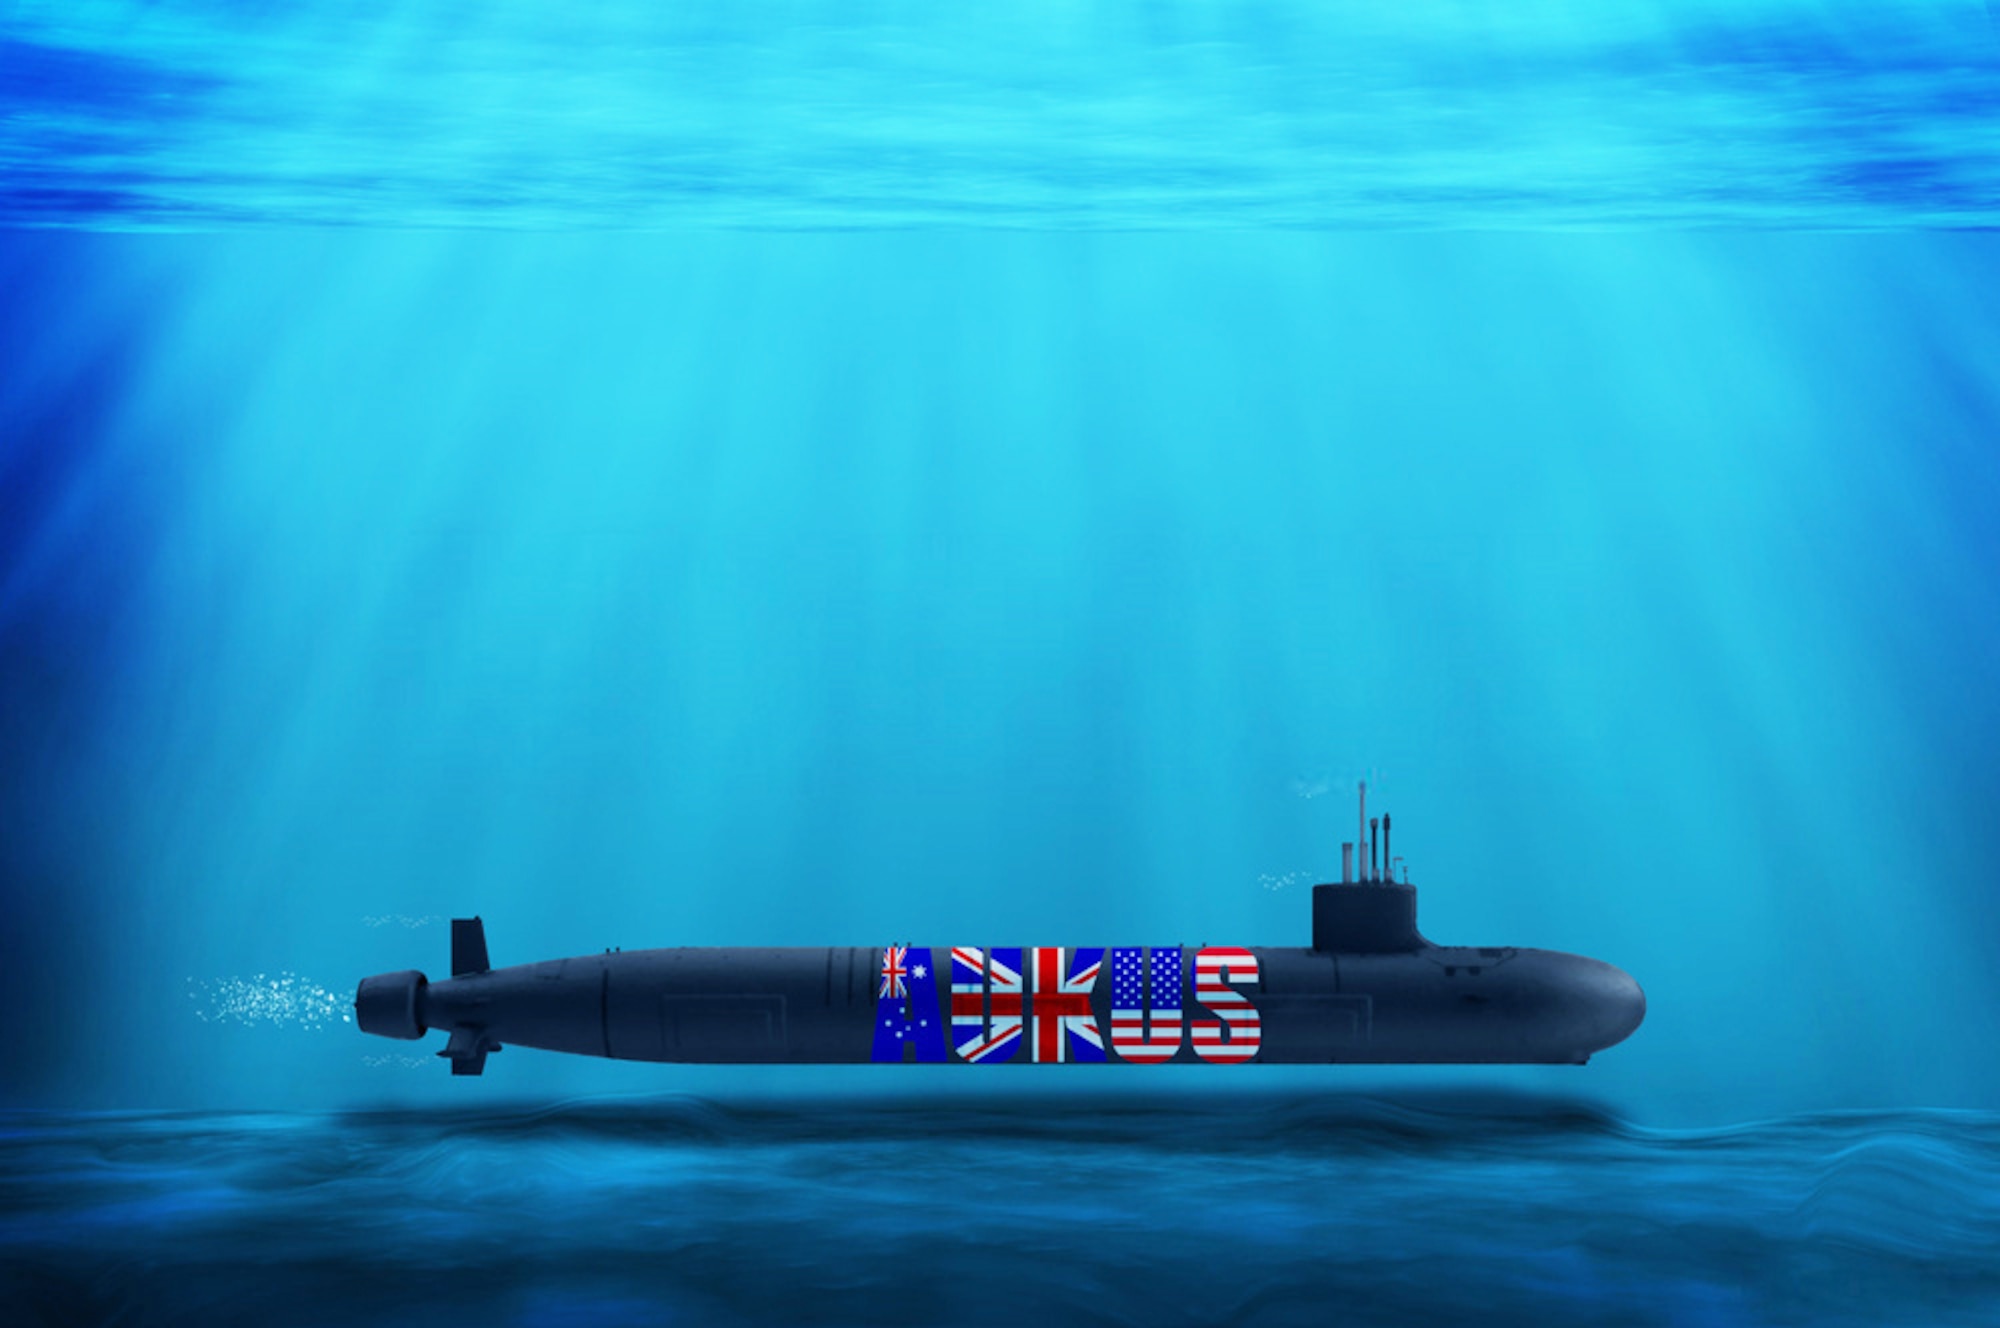 future attack submarines